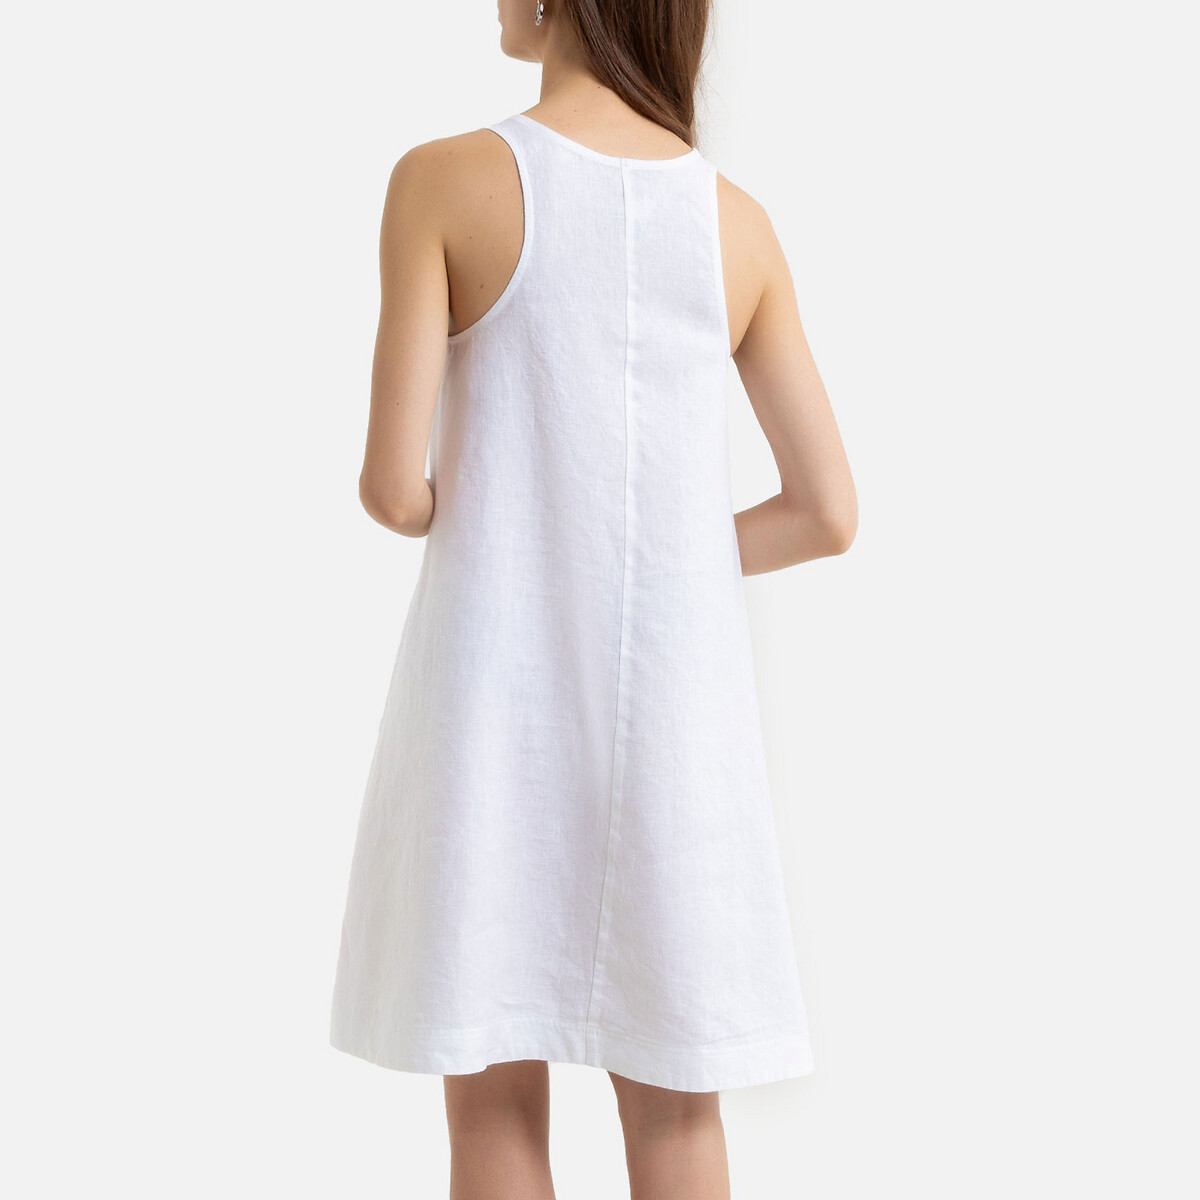 Платье La Redoute Без рукавов расклешенной формы из льна 42 (FR) - 48 (RUS) белый, размер 42 (FR) - 48 (RUS) Без рукавов расклешенной формы из льна 42 (FR) - 48 (RUS) белый - фото 4